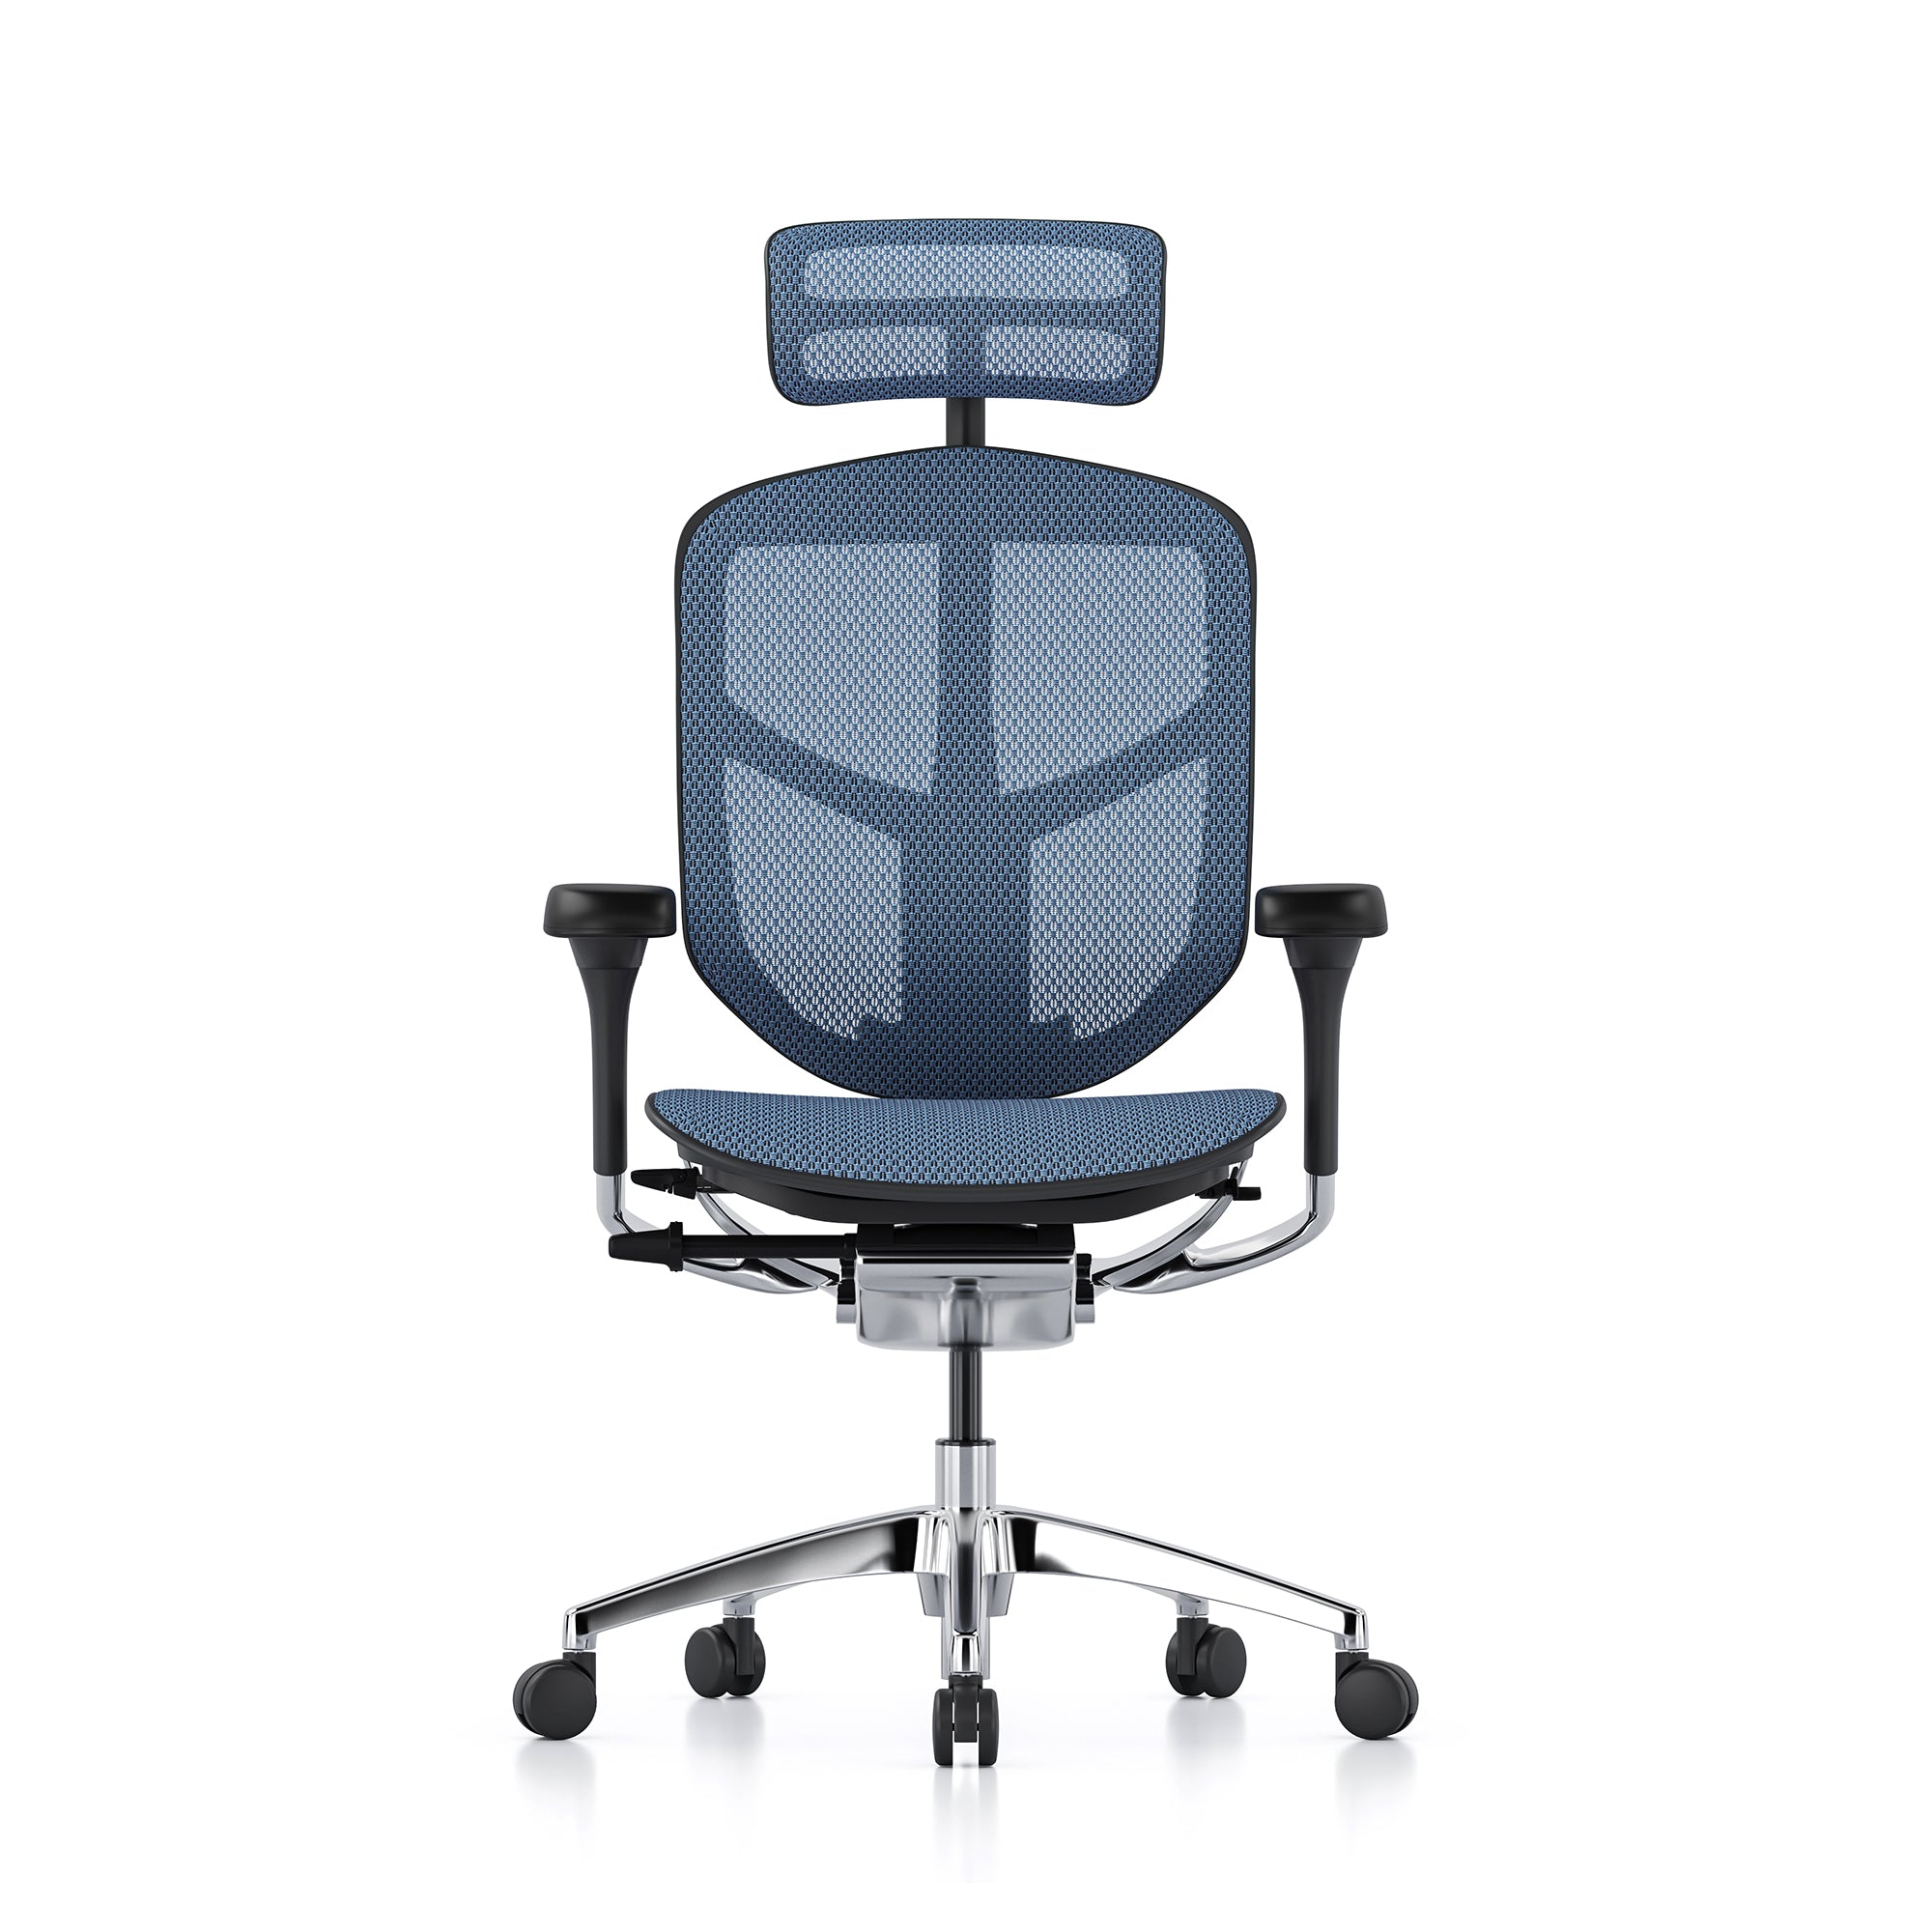 Ergohuman office chairs | Full range of ergonomic office chairs